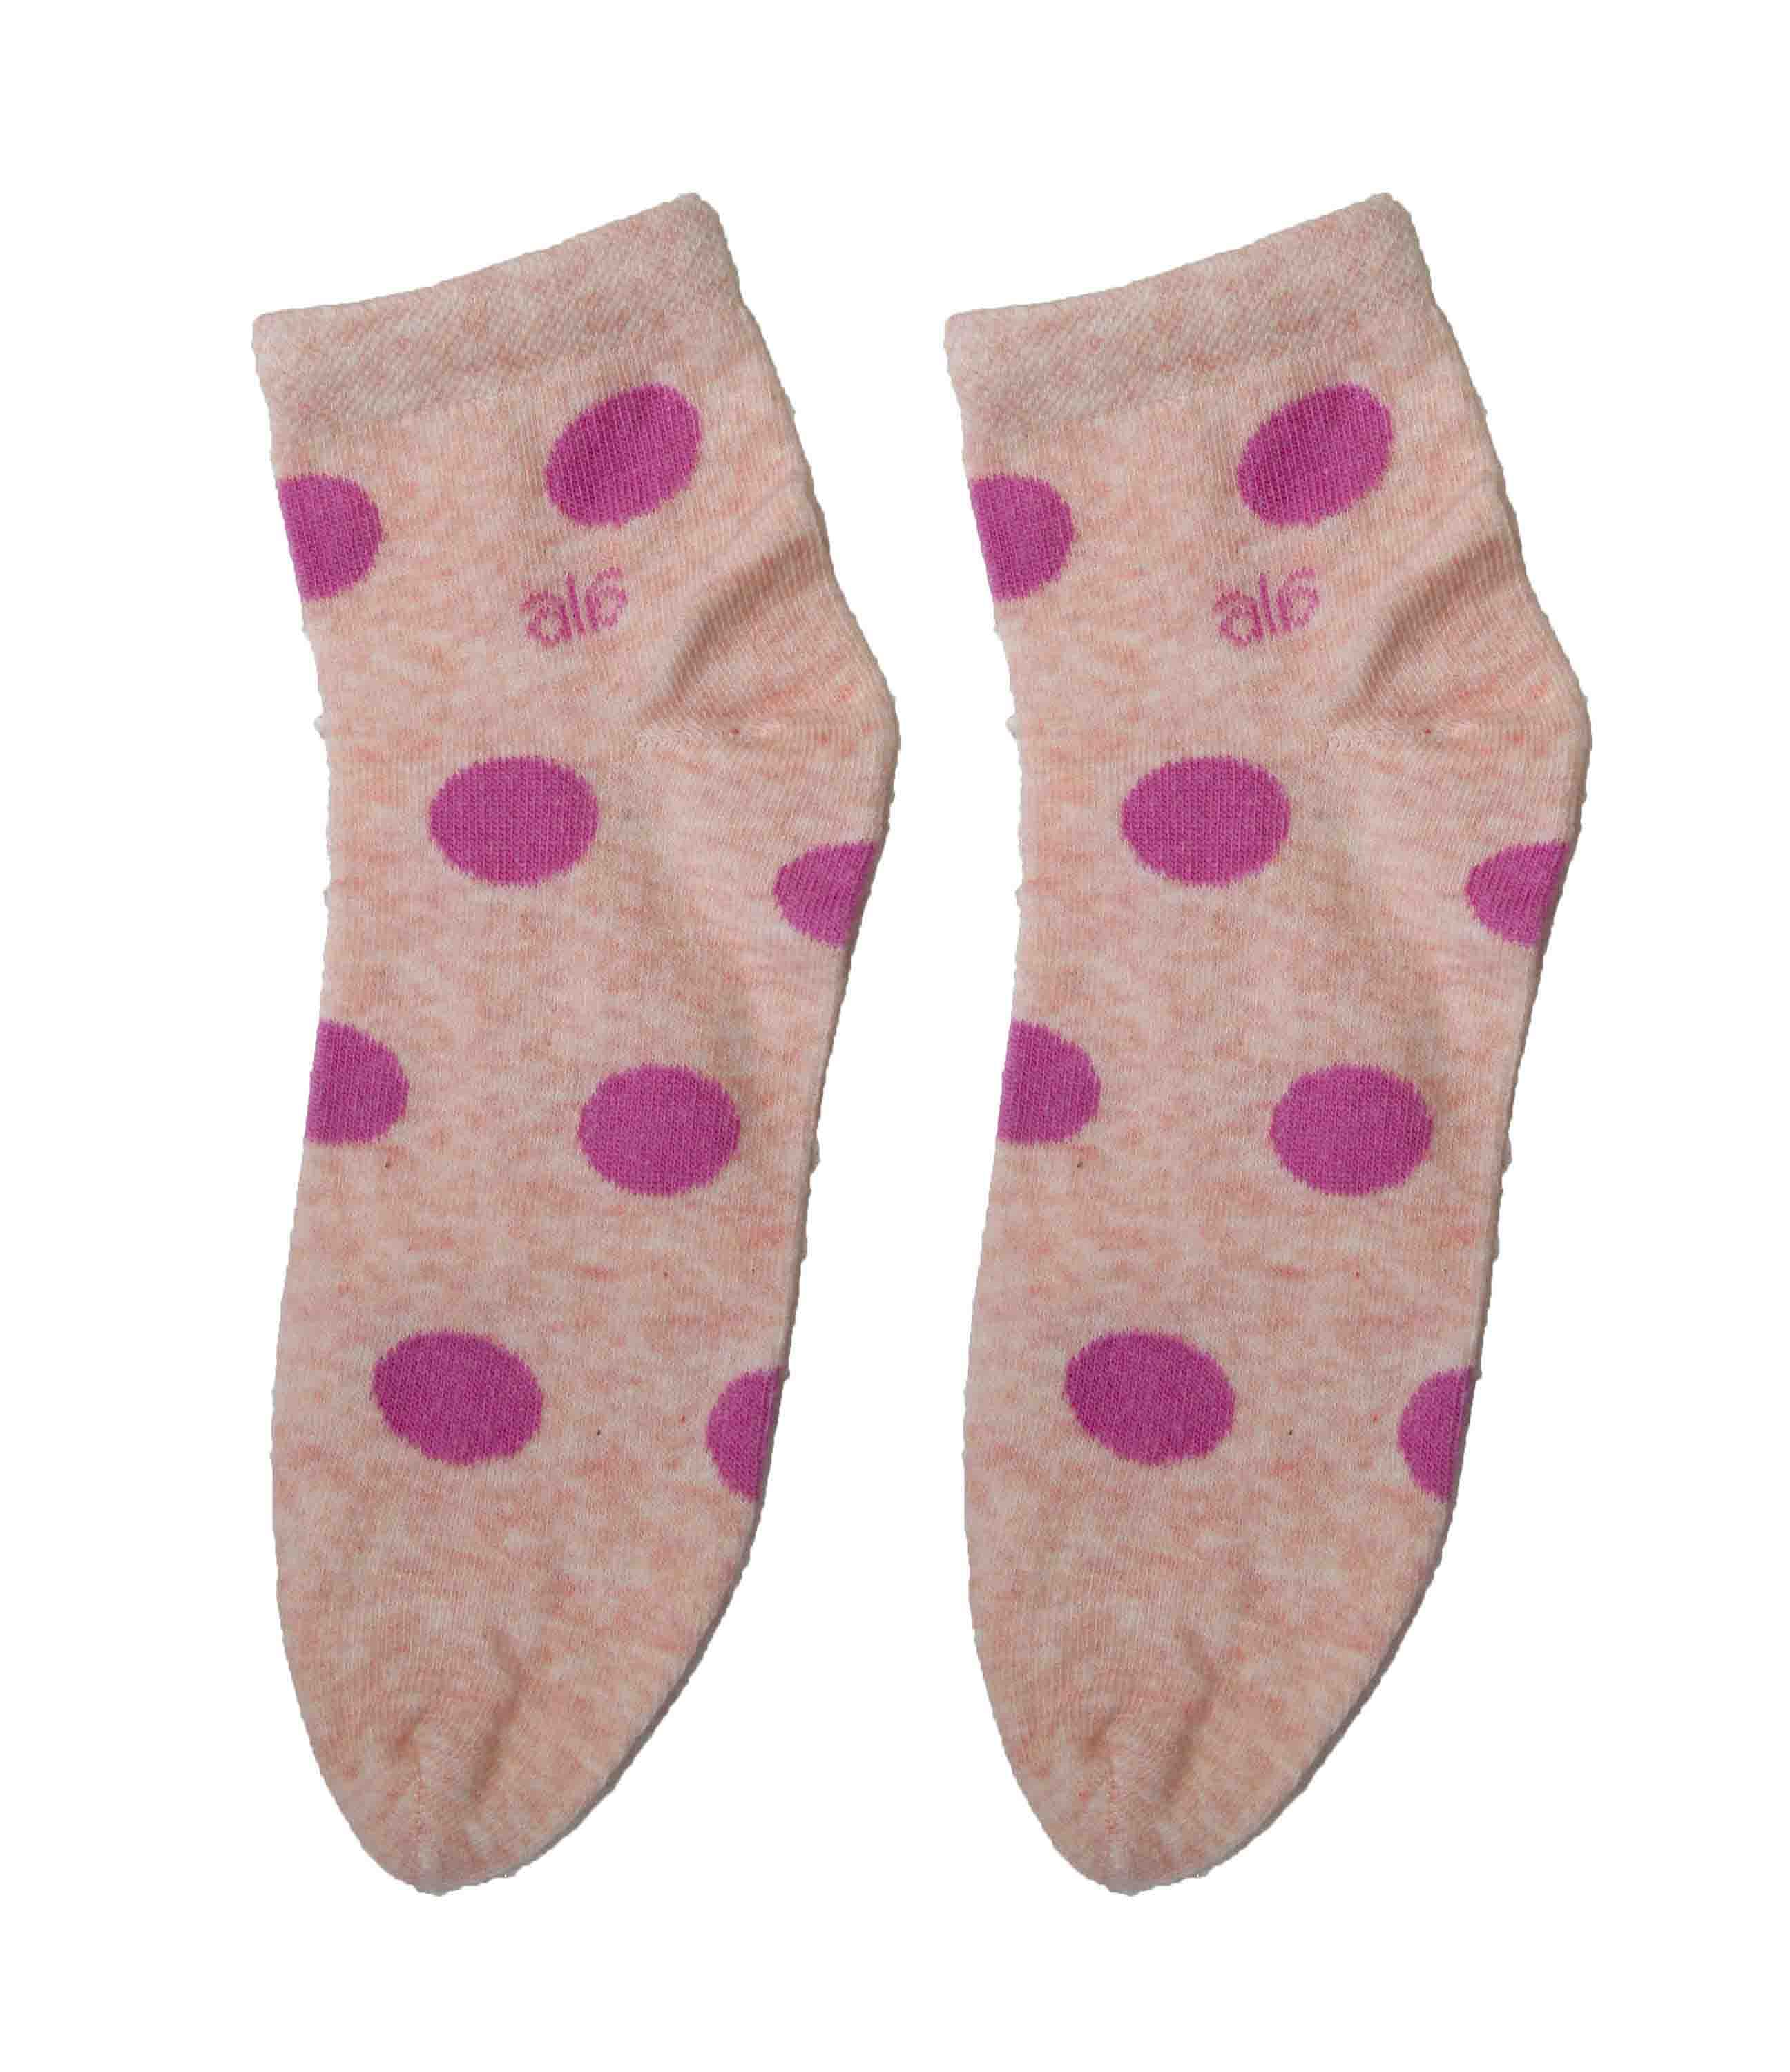 Ellie Wmn ankle Socks - Design-BG-Wmn-DESIGN-006-PCH